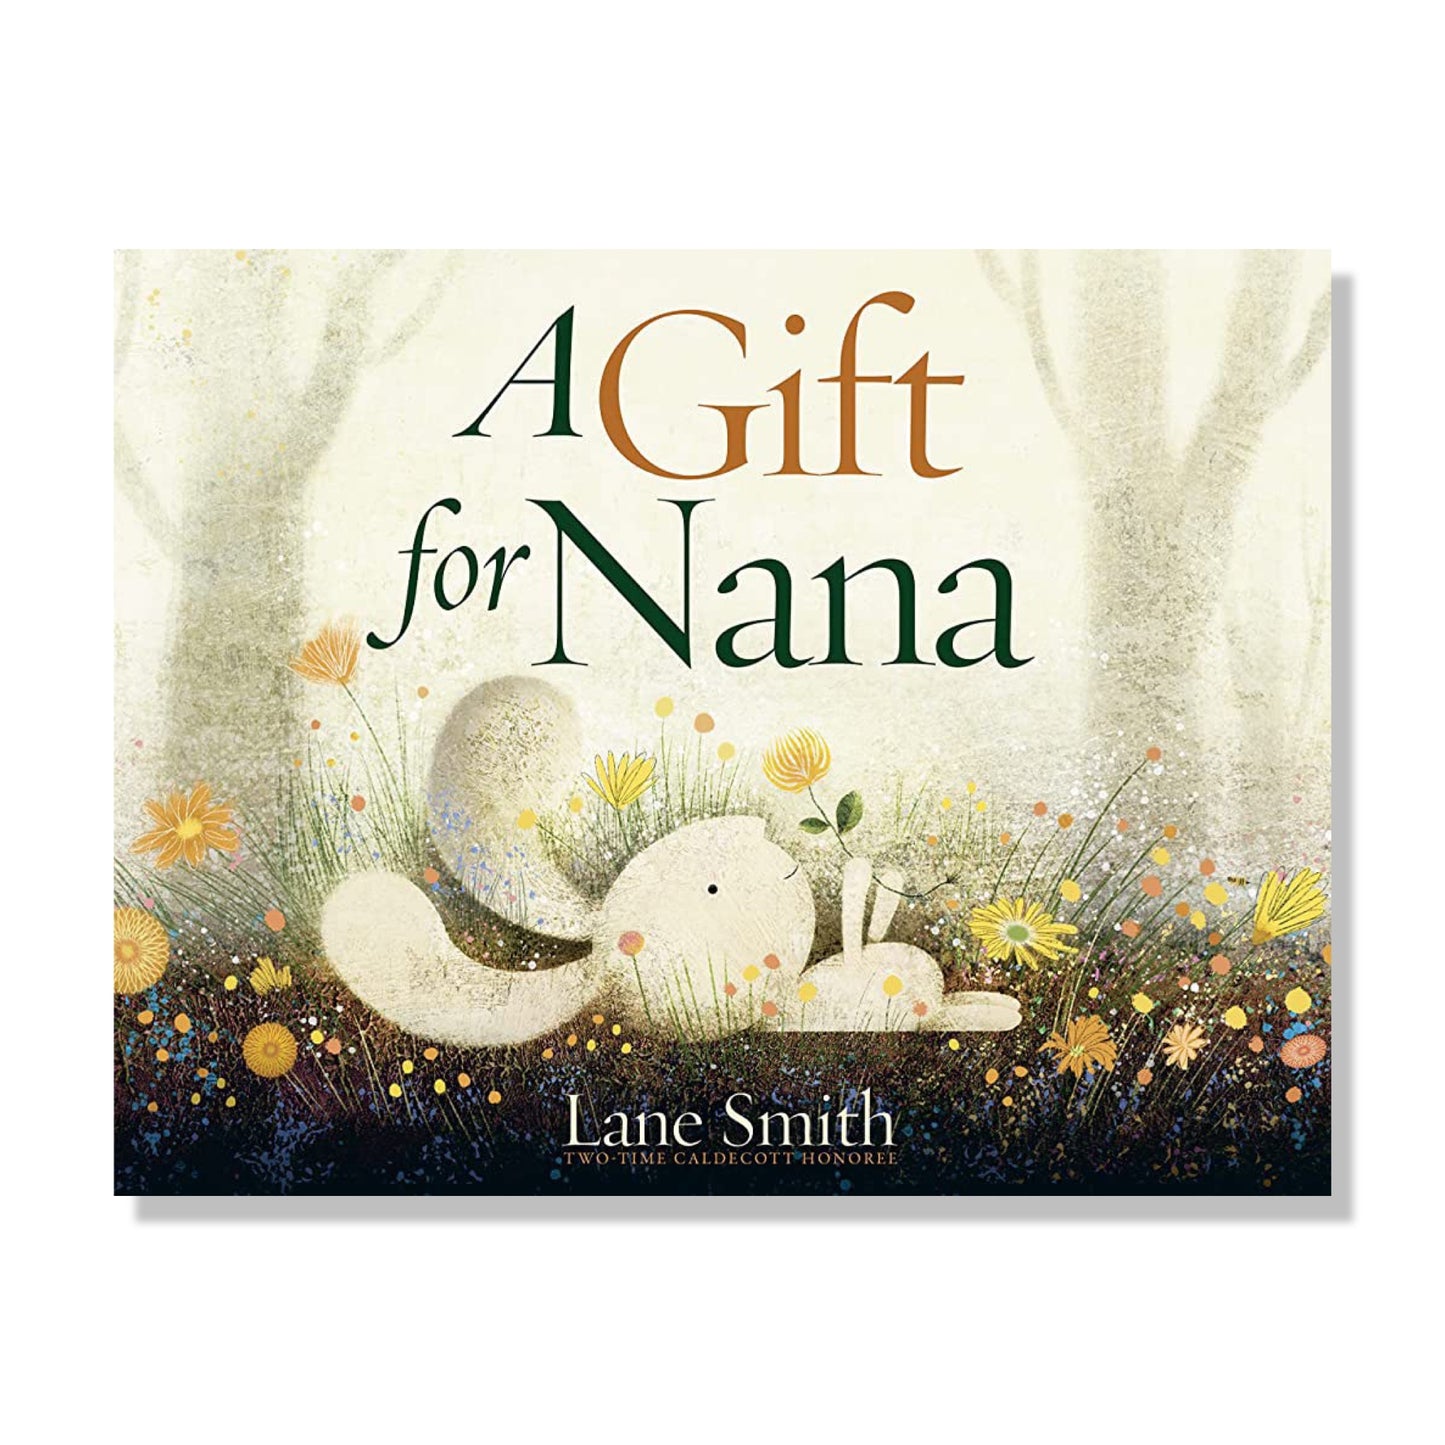 Gift for Nana